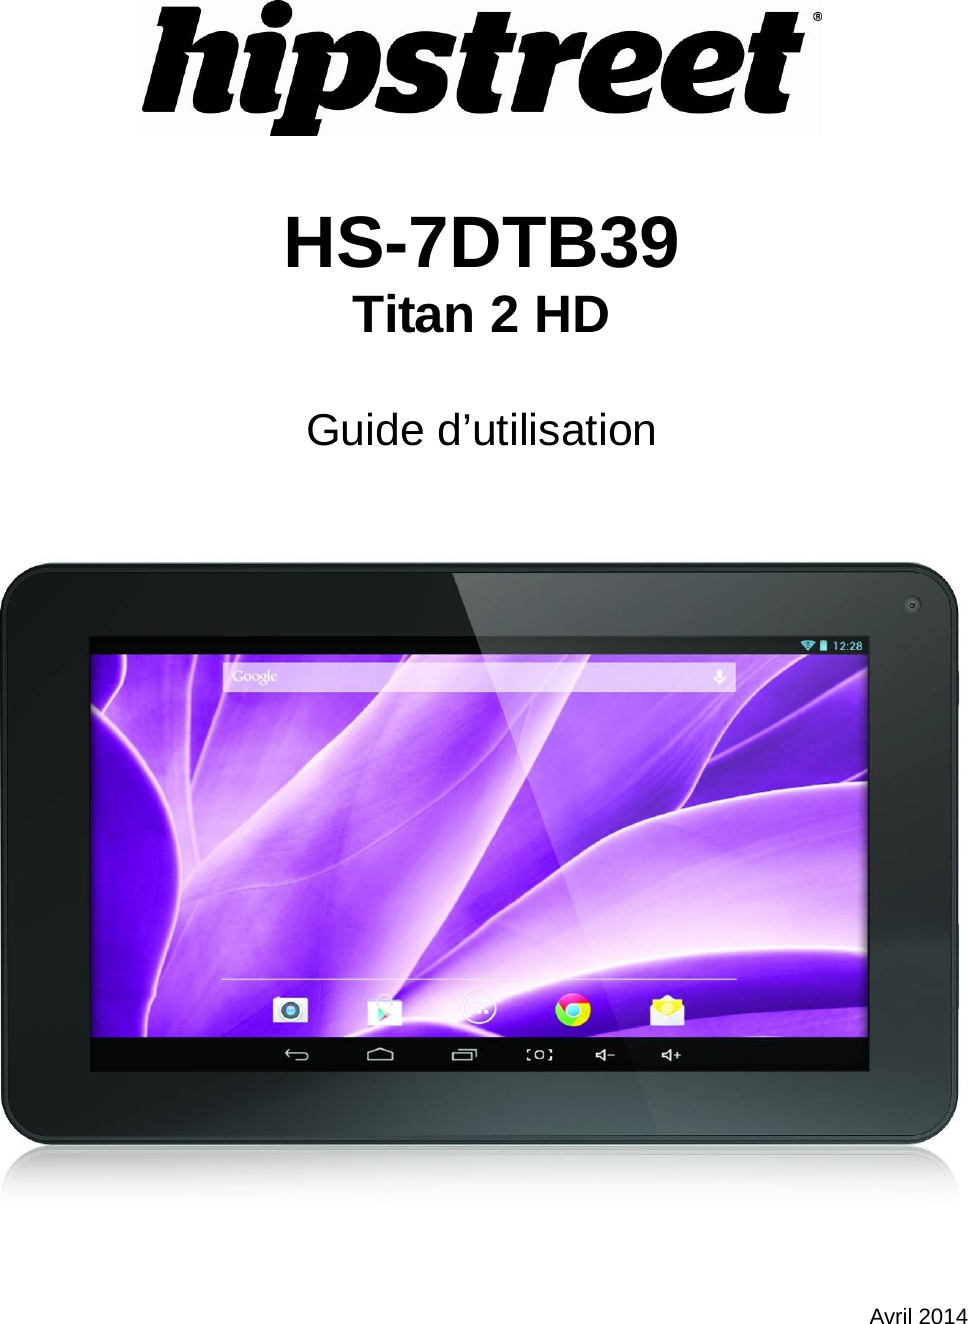    HS-7DTB39 Titan 2 HD  Guide d’utilisation      Avril 2014 